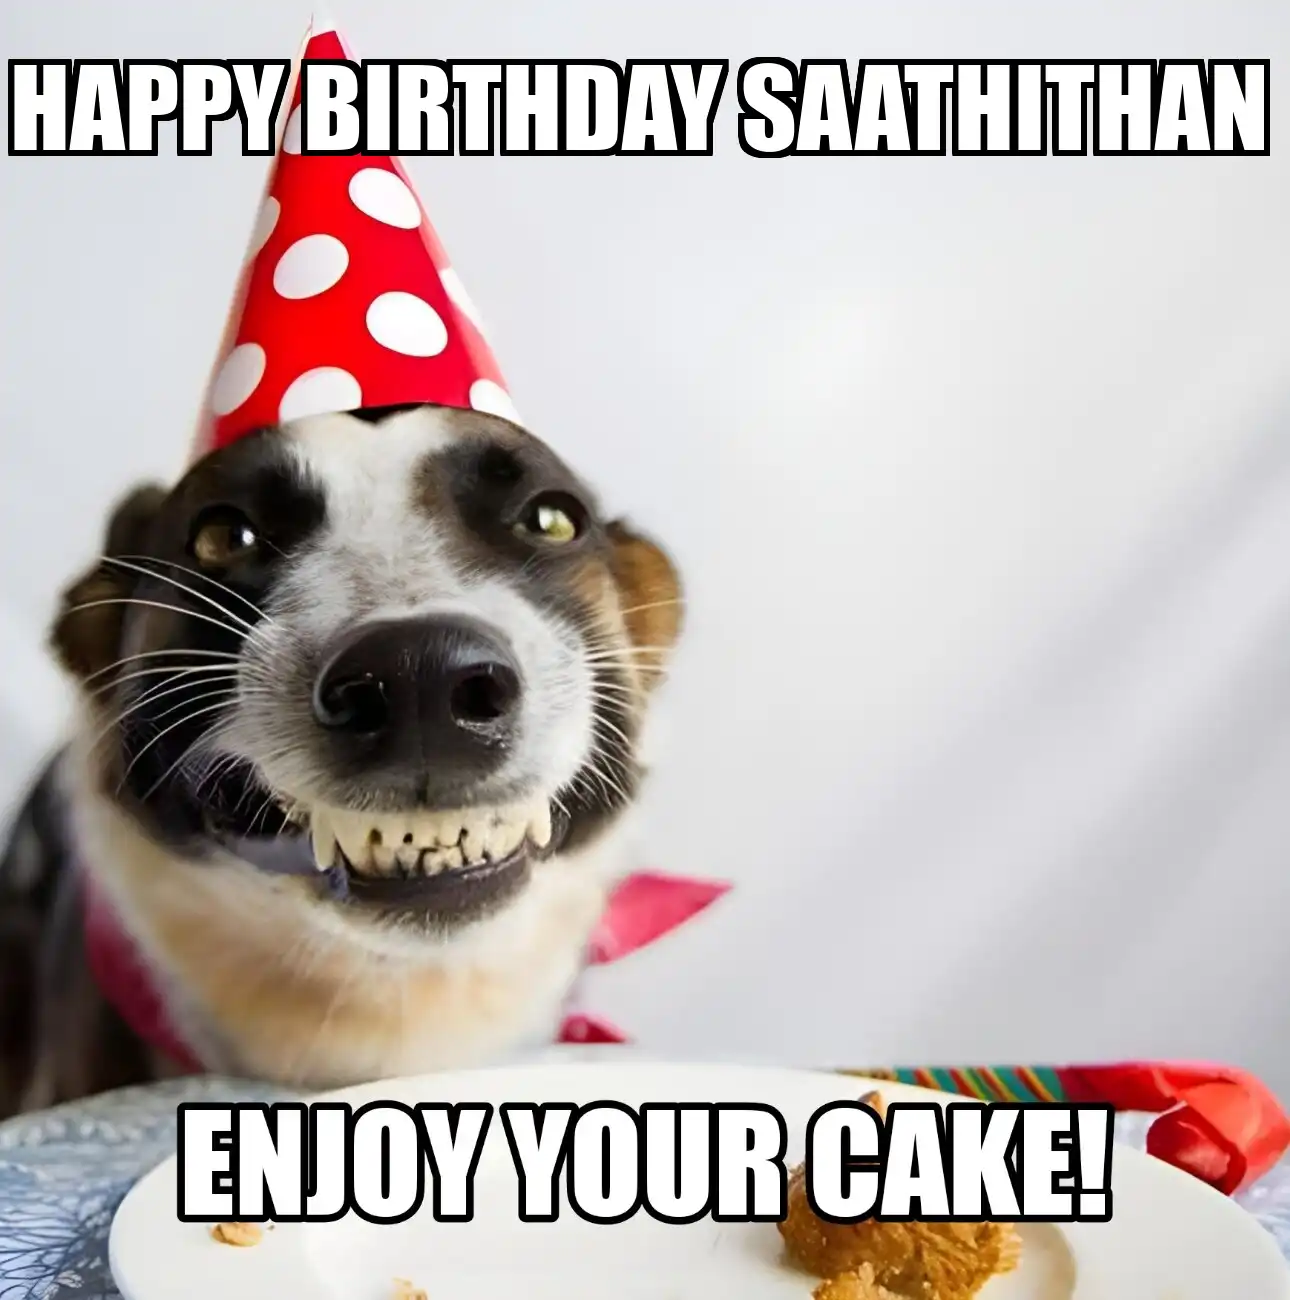 Happy Birthday Saathithan Enjoy Your Cake Dog Meme